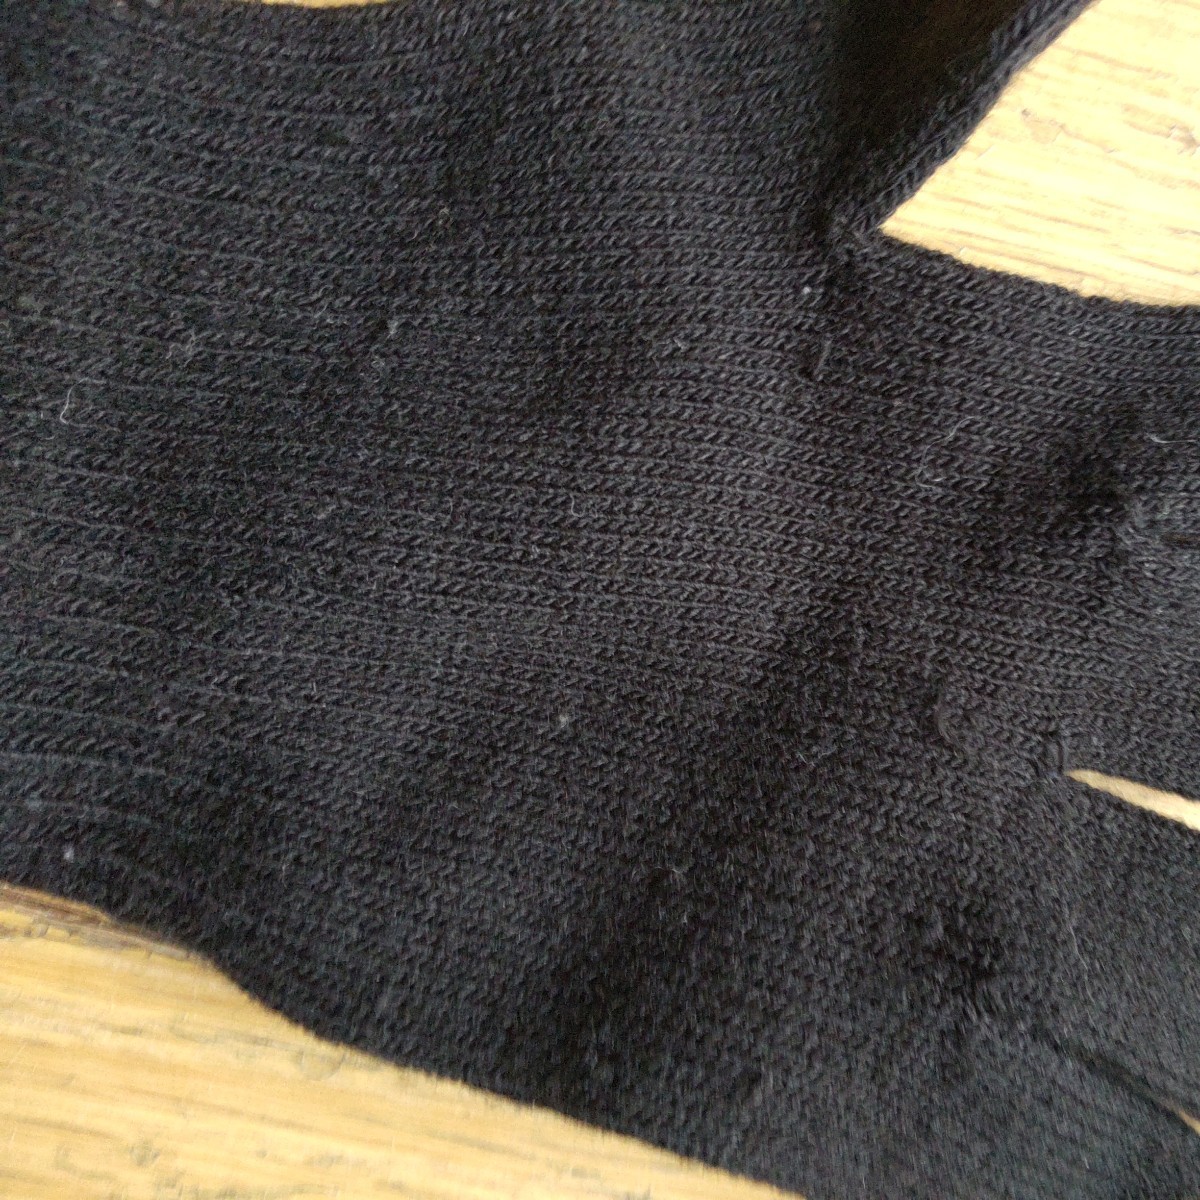  black black gloves army hand for children 